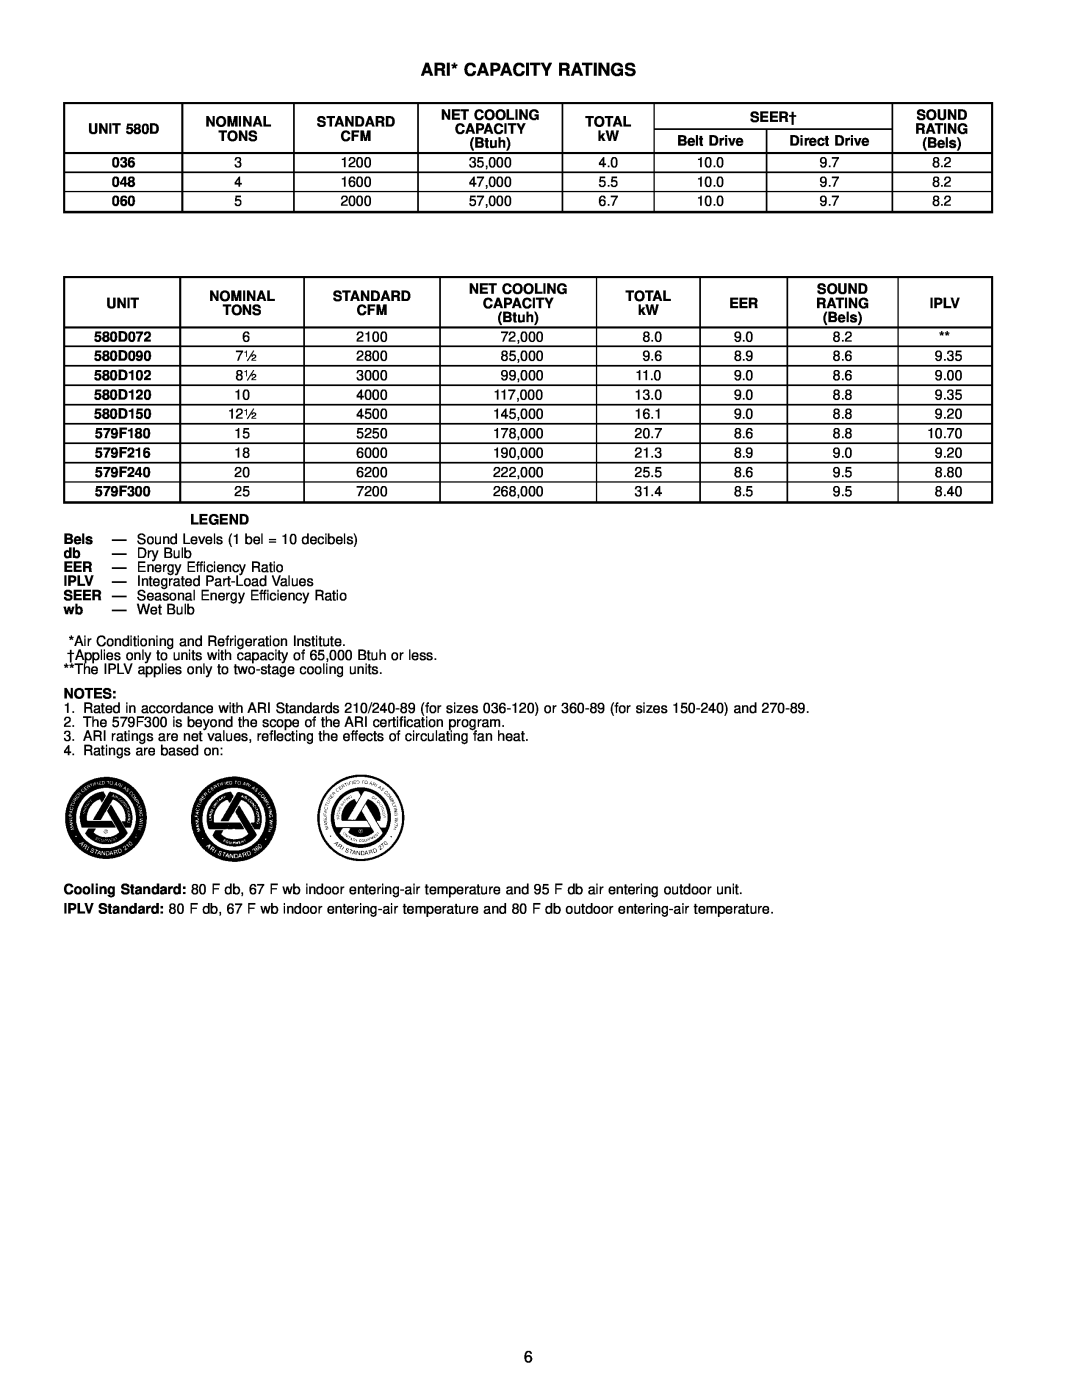 Bryant 580D manual Ari* Capacity Ratings 